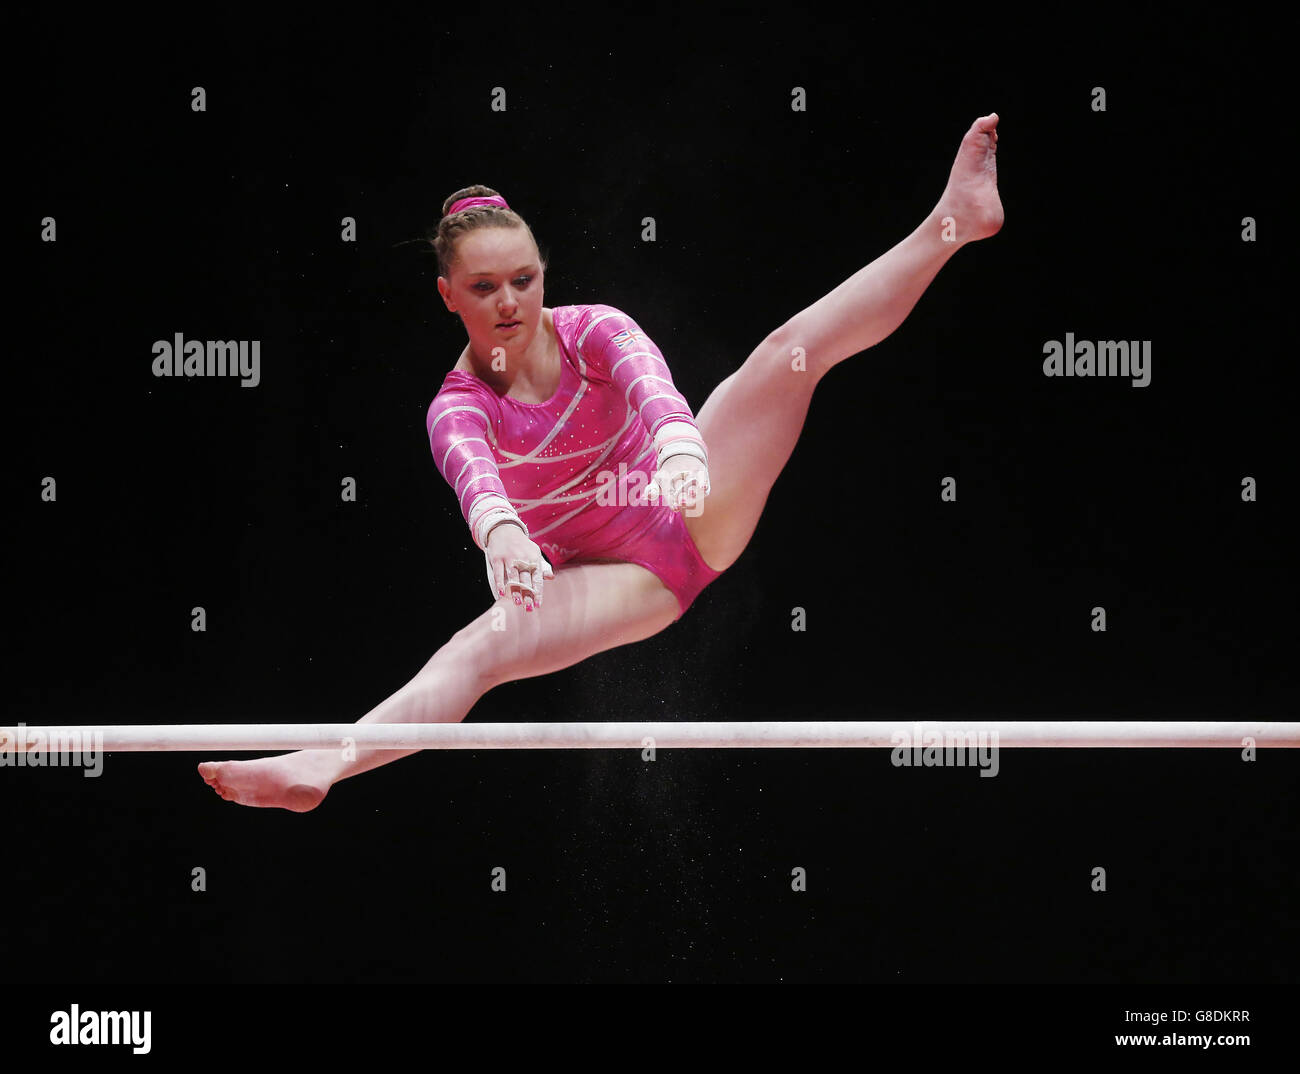 Amy Tinkler, en Grande-Bretagne, est en compétition sur les barreaux inégaux au cours du septième jour des Championnats du monde de gymnastique 2015 au SSE Hydro, à Glasgow. Banque D'Images